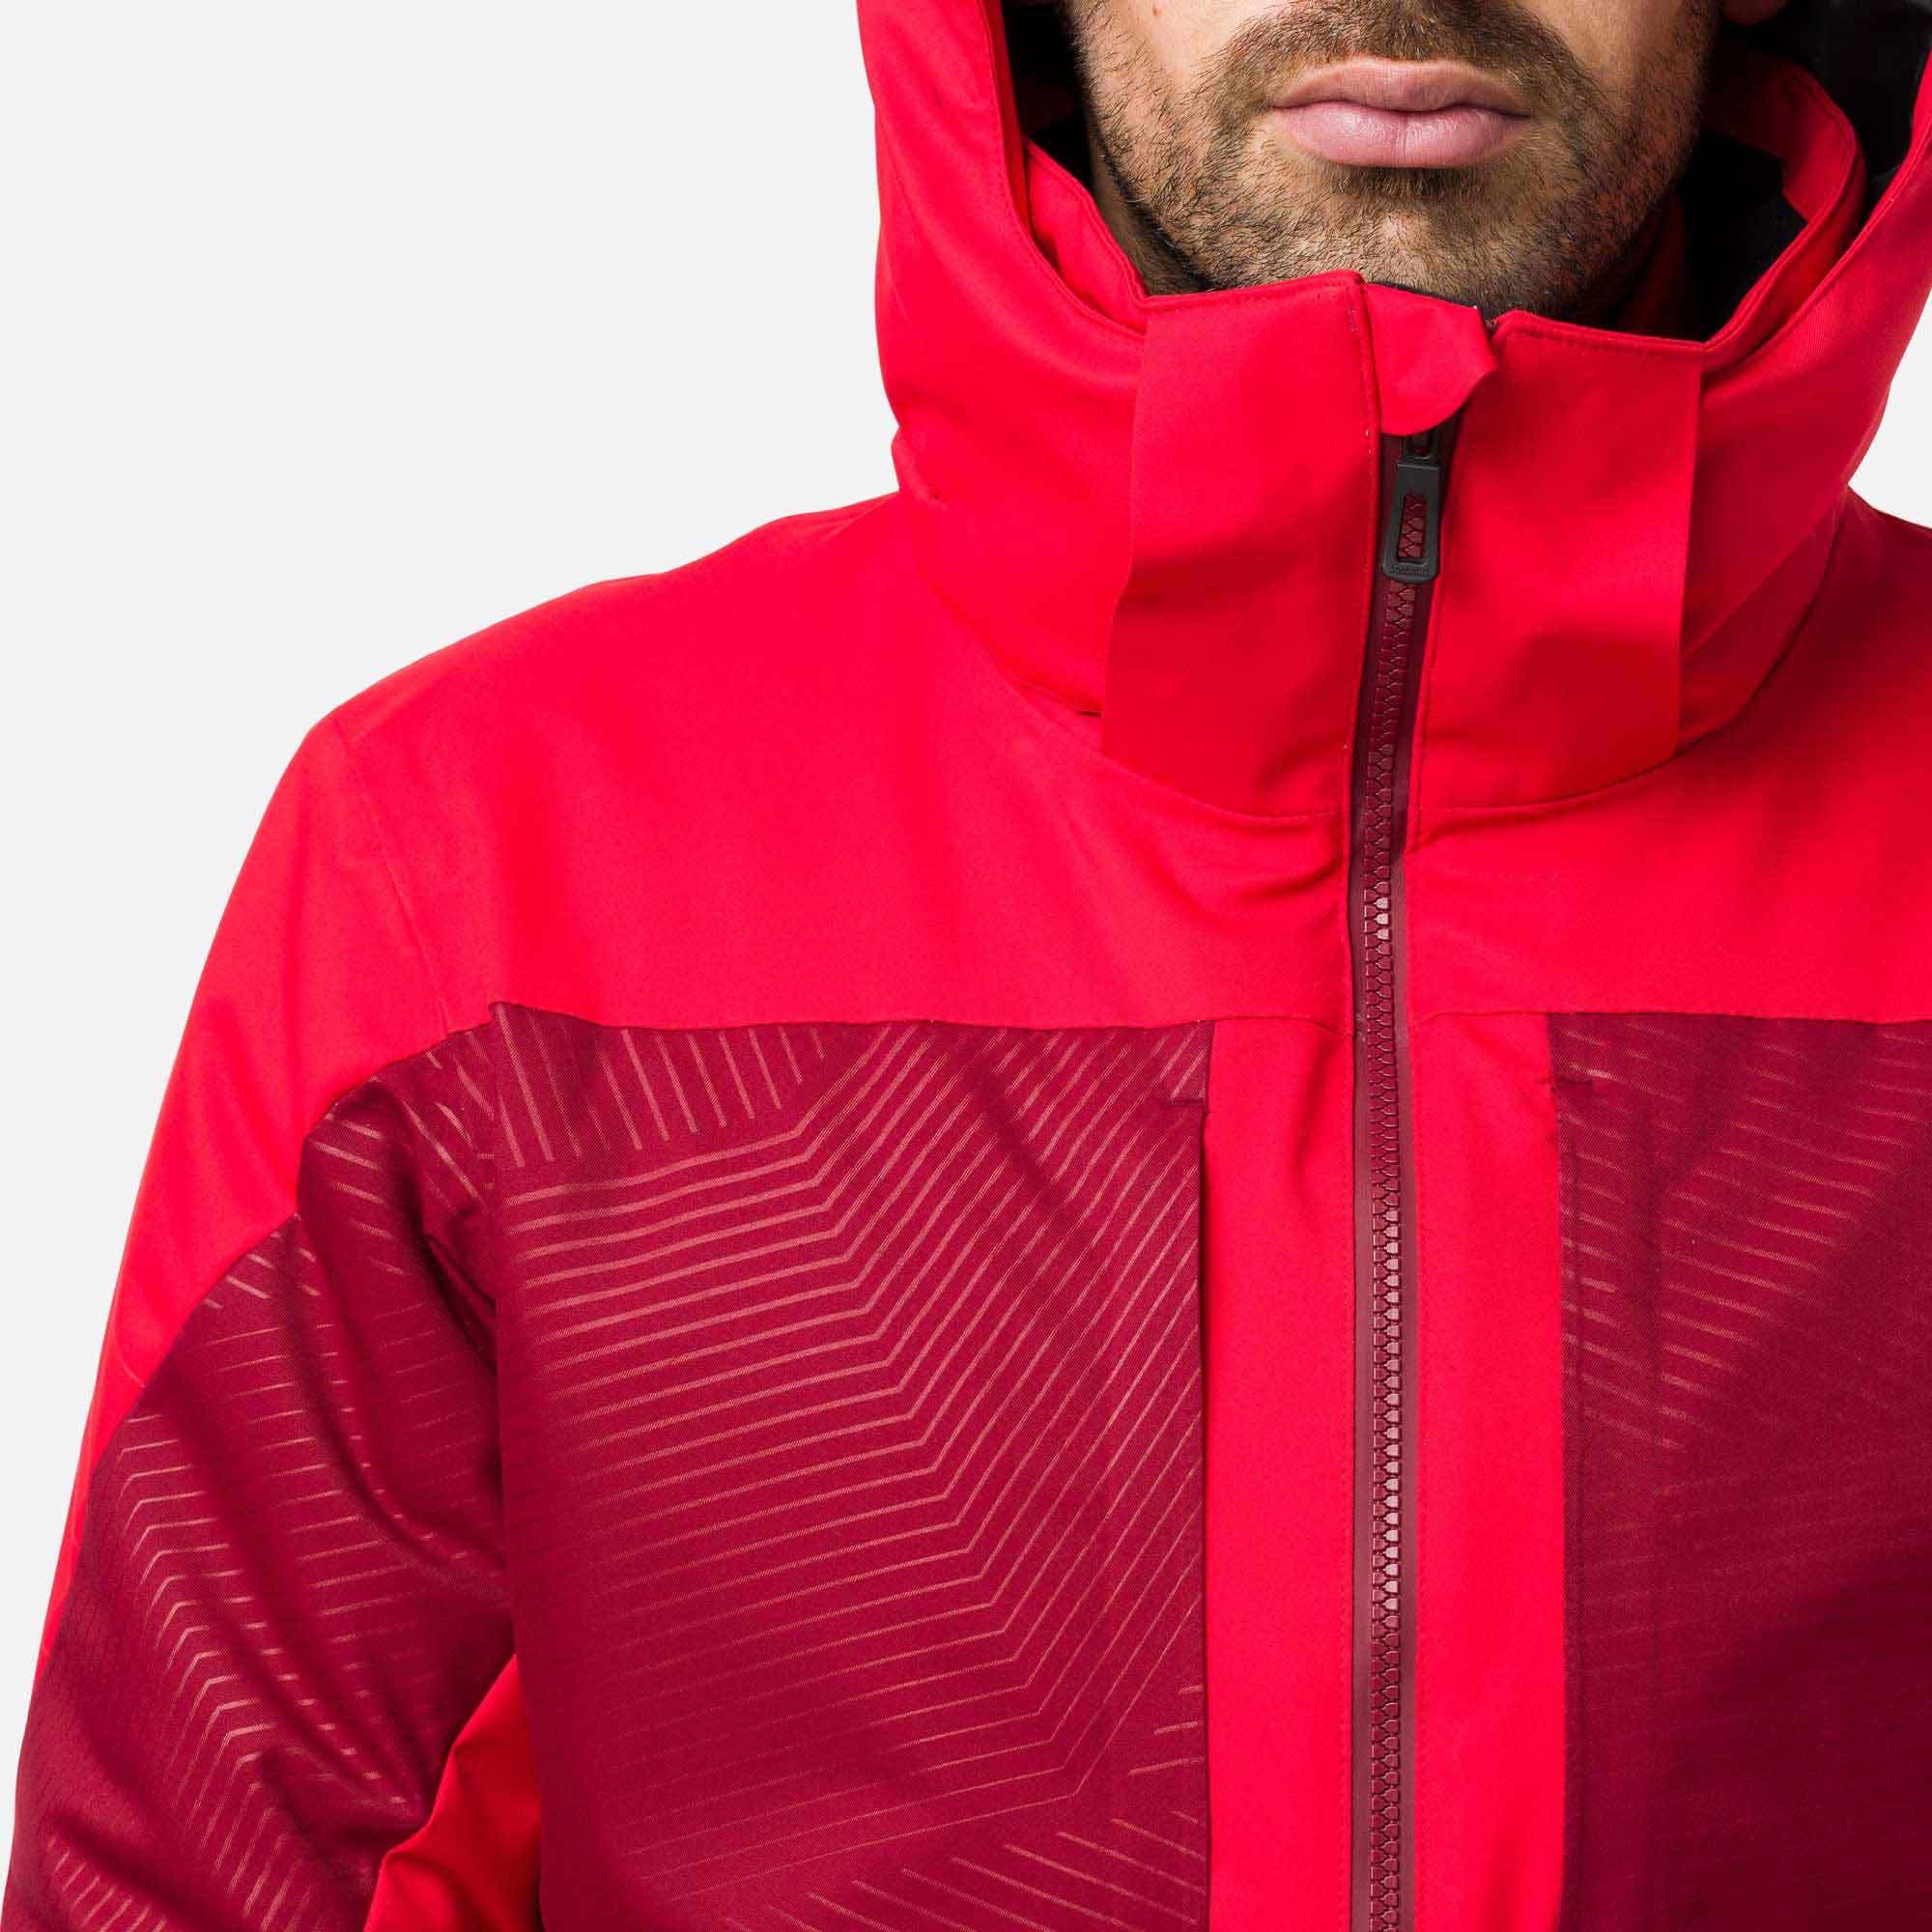 Rossignol Mens Stade Ski Jacket (Red) – Size Medium